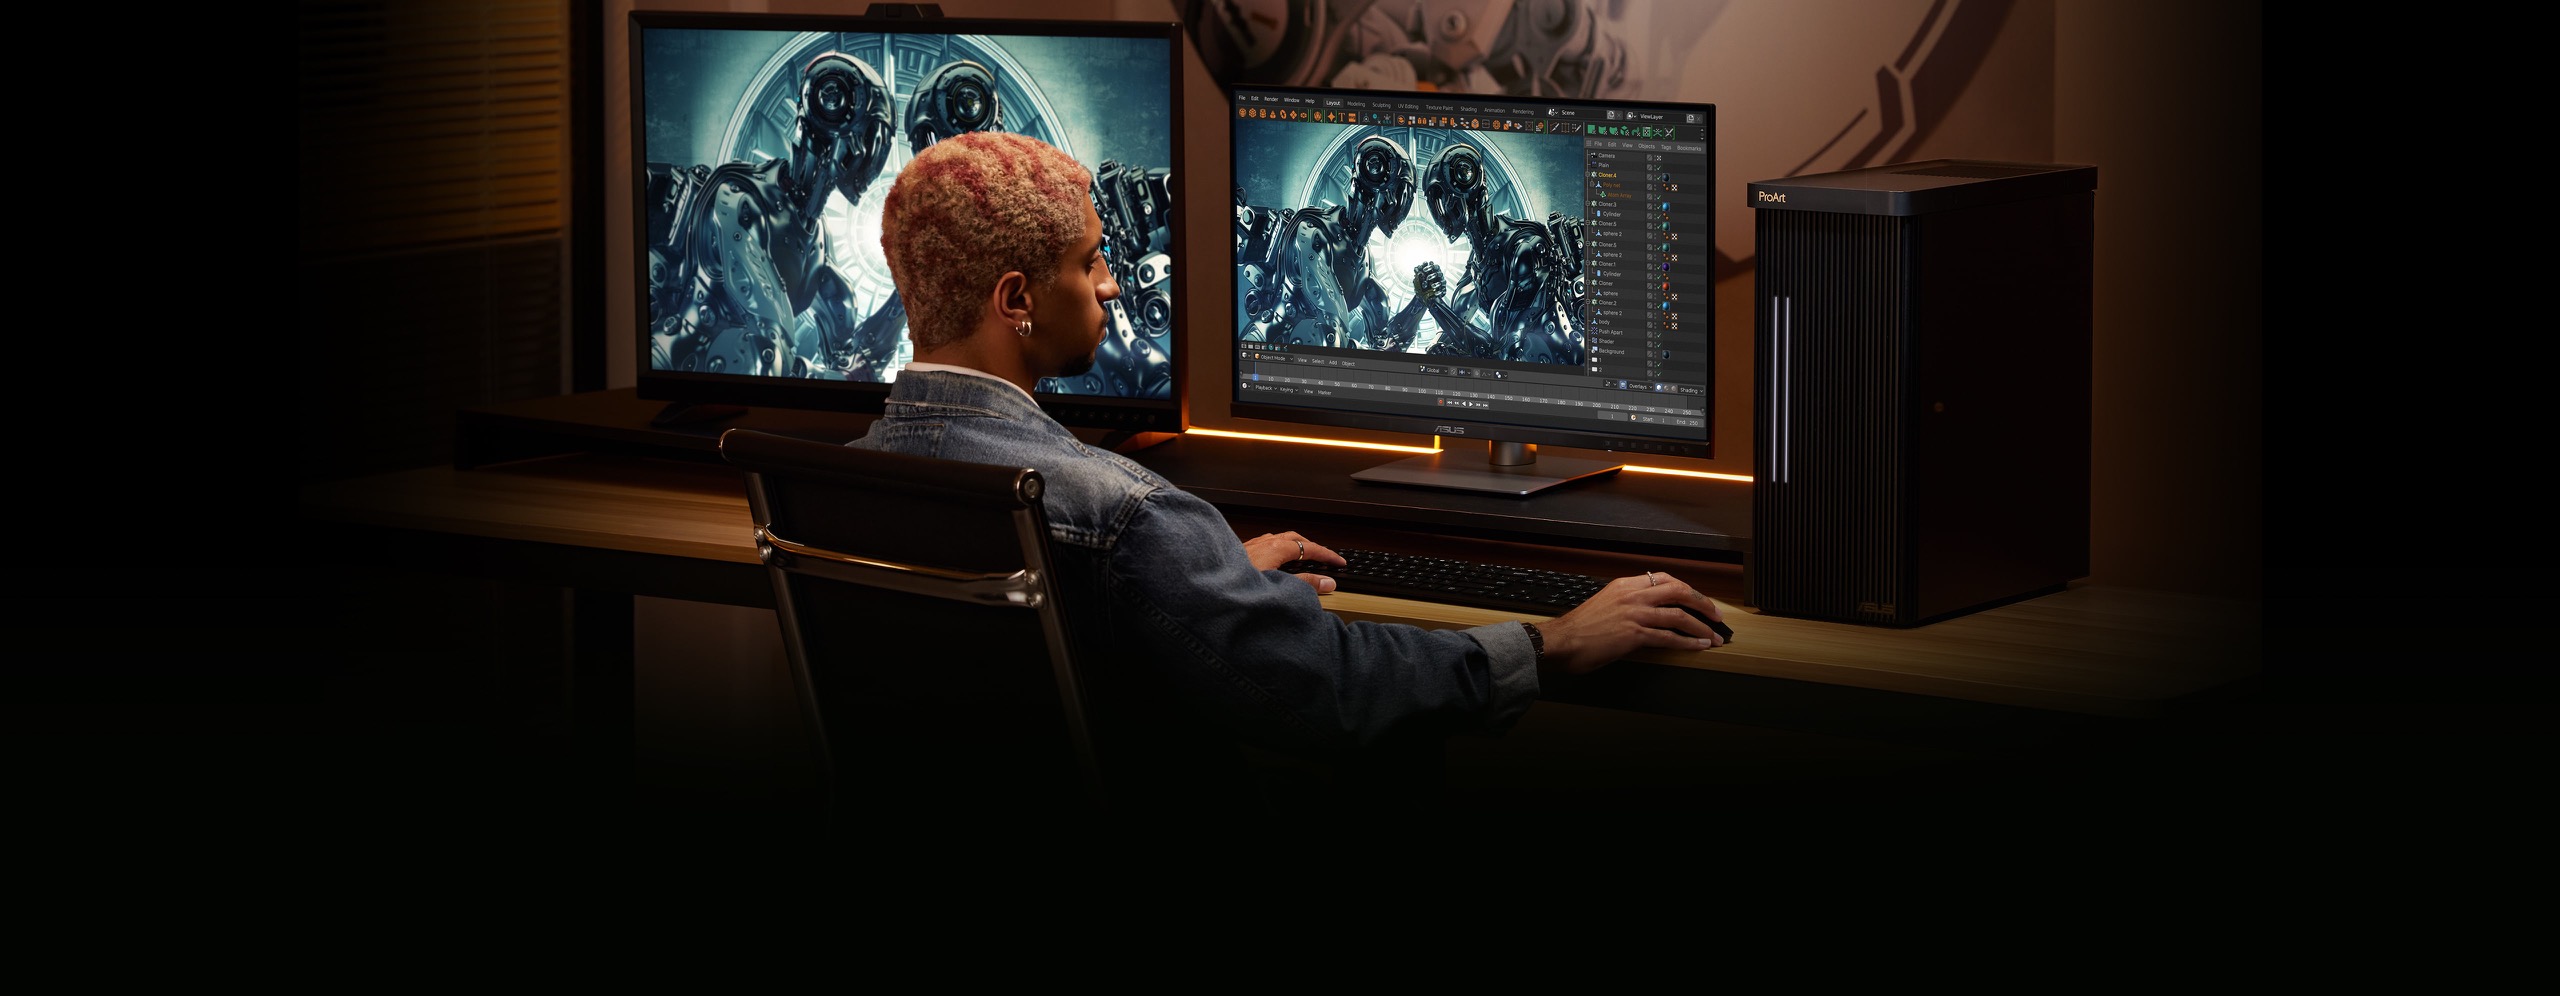 Un hombre sentado en una silla mientras sostiene un mouse y escribe en un teclado con un monitor externo en el lado izquierdo y una PC en el medio, y una estación en el lado derecho del escritorio. Un cuadro está colgado en el pasillo frente al escritorio.